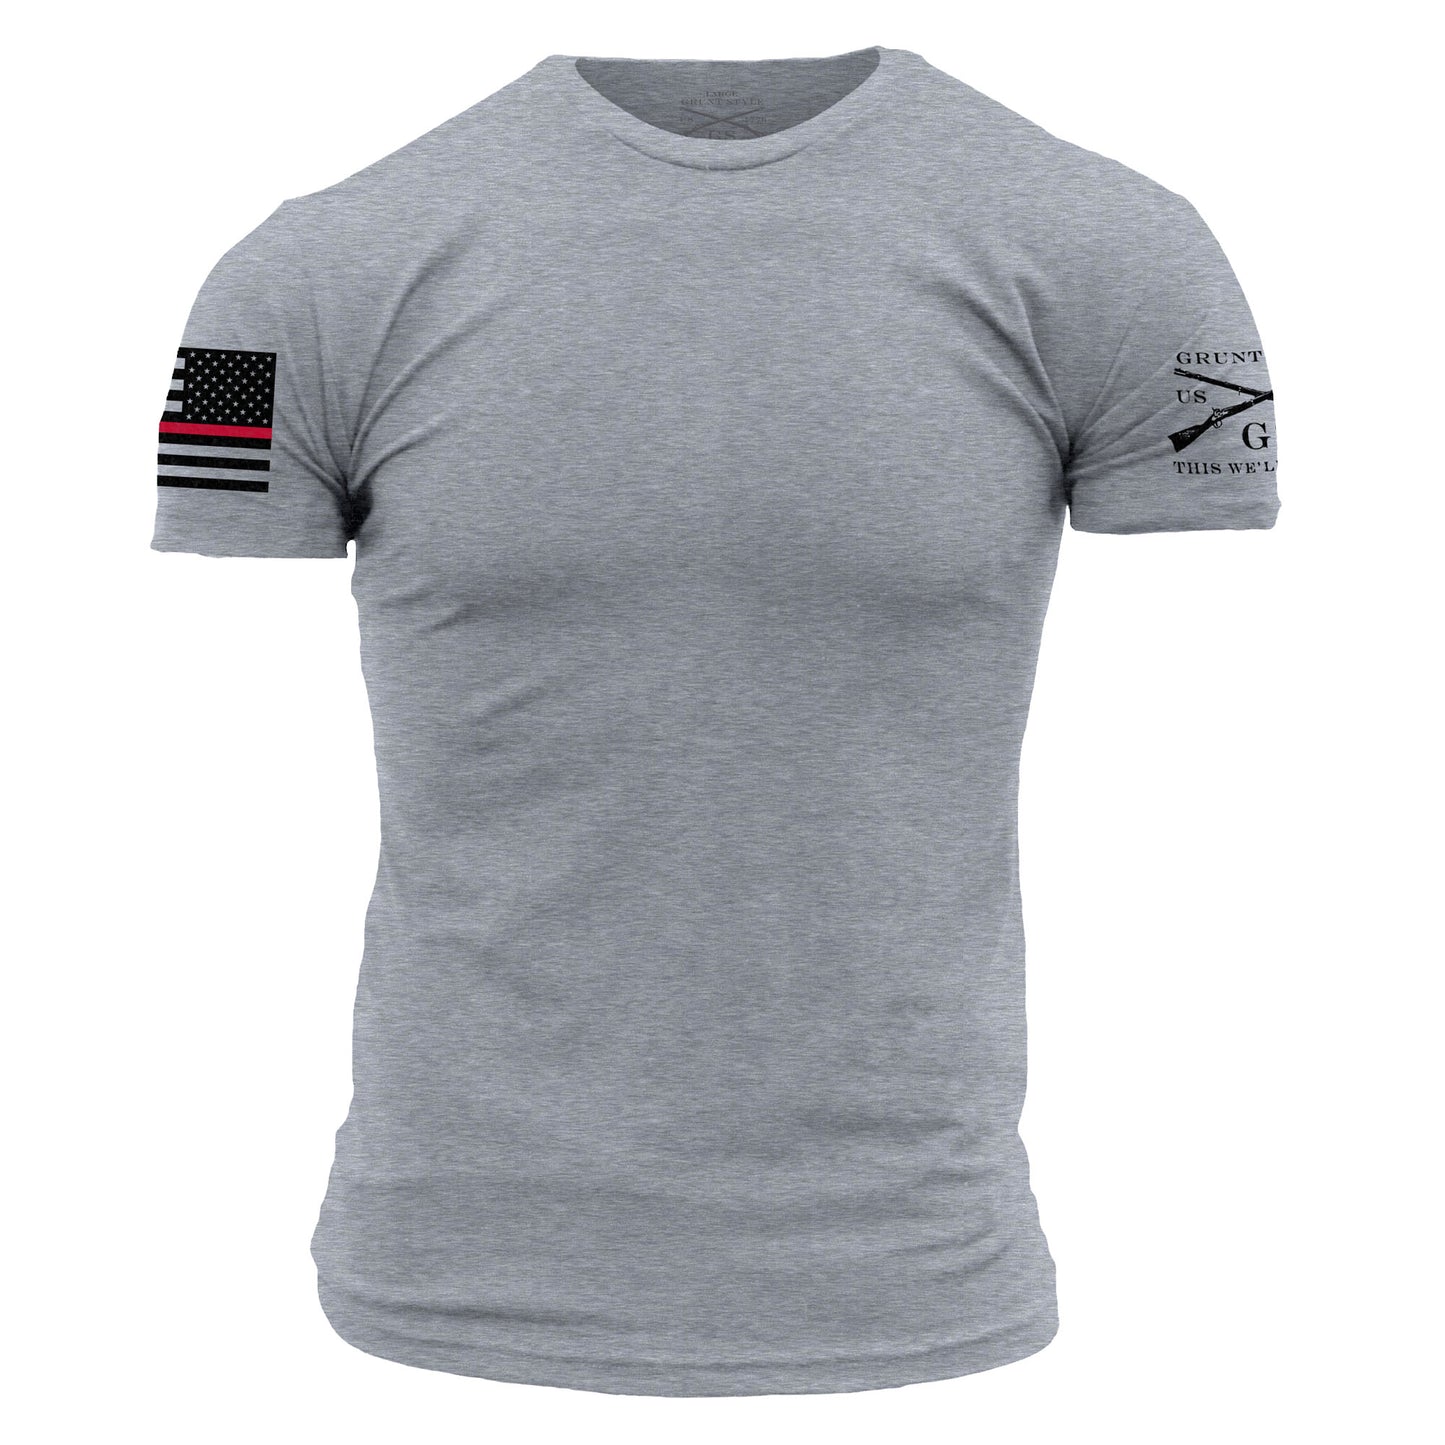 firefighter shirts - shirt bundle deal 